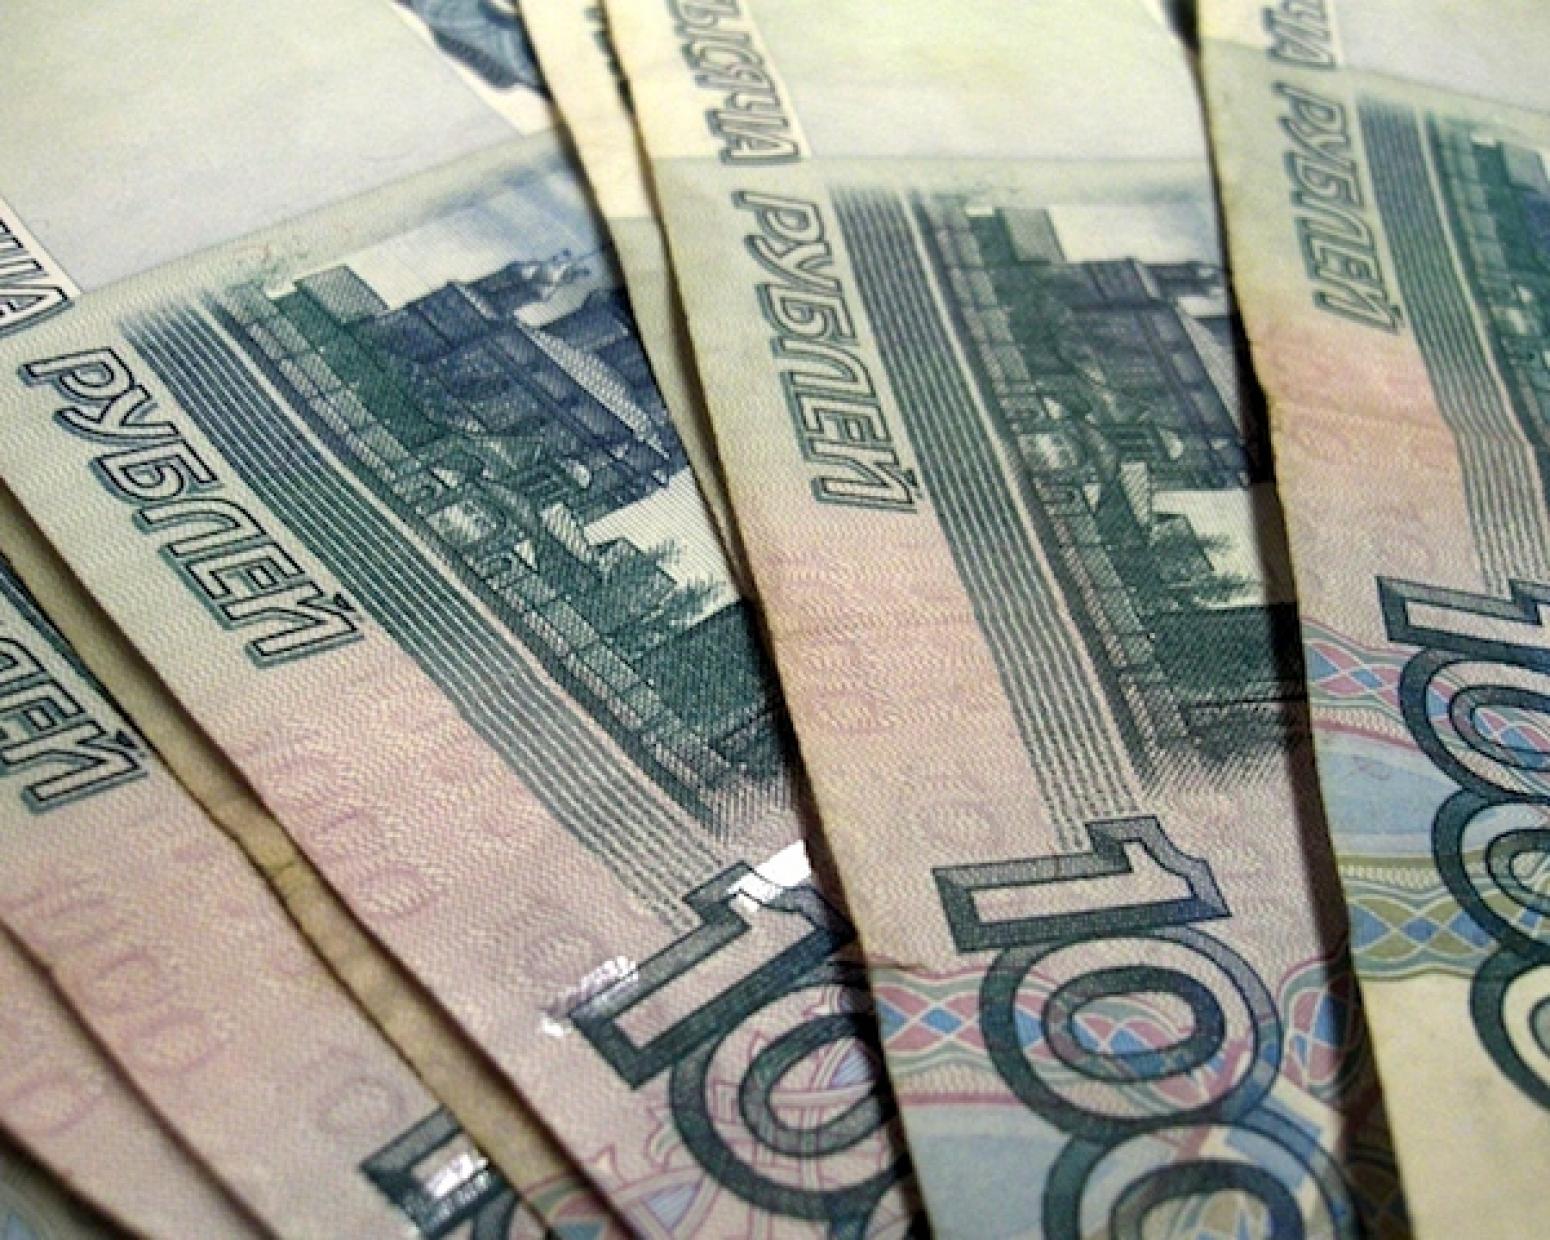 450000 рублей в долларах